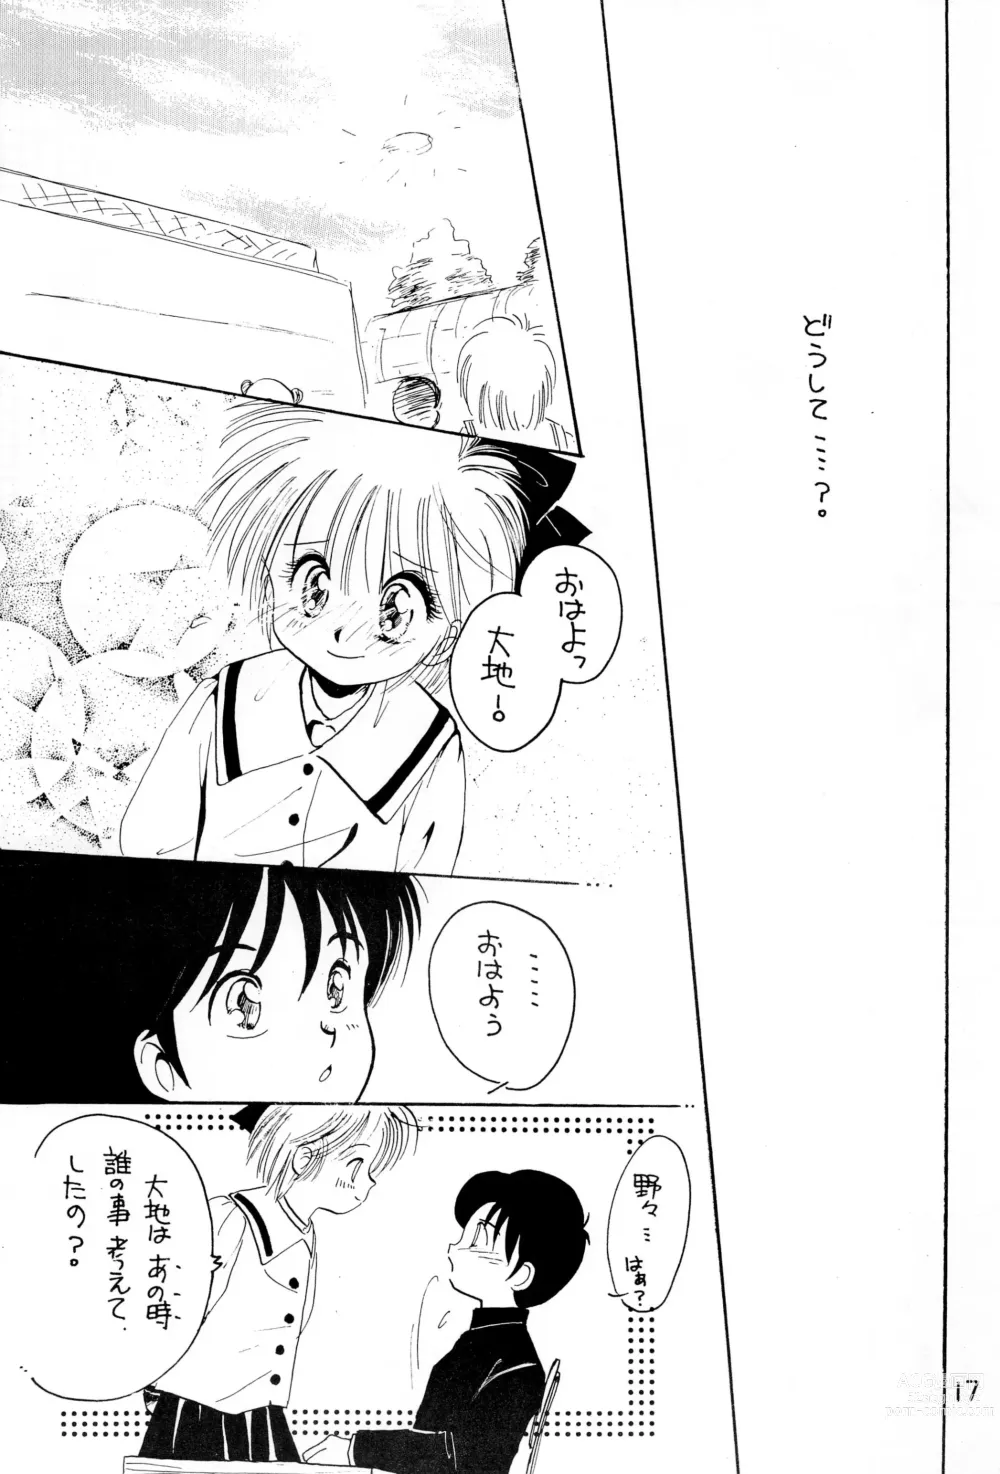 Page 17 of doujinshi Uwasa no Himeko